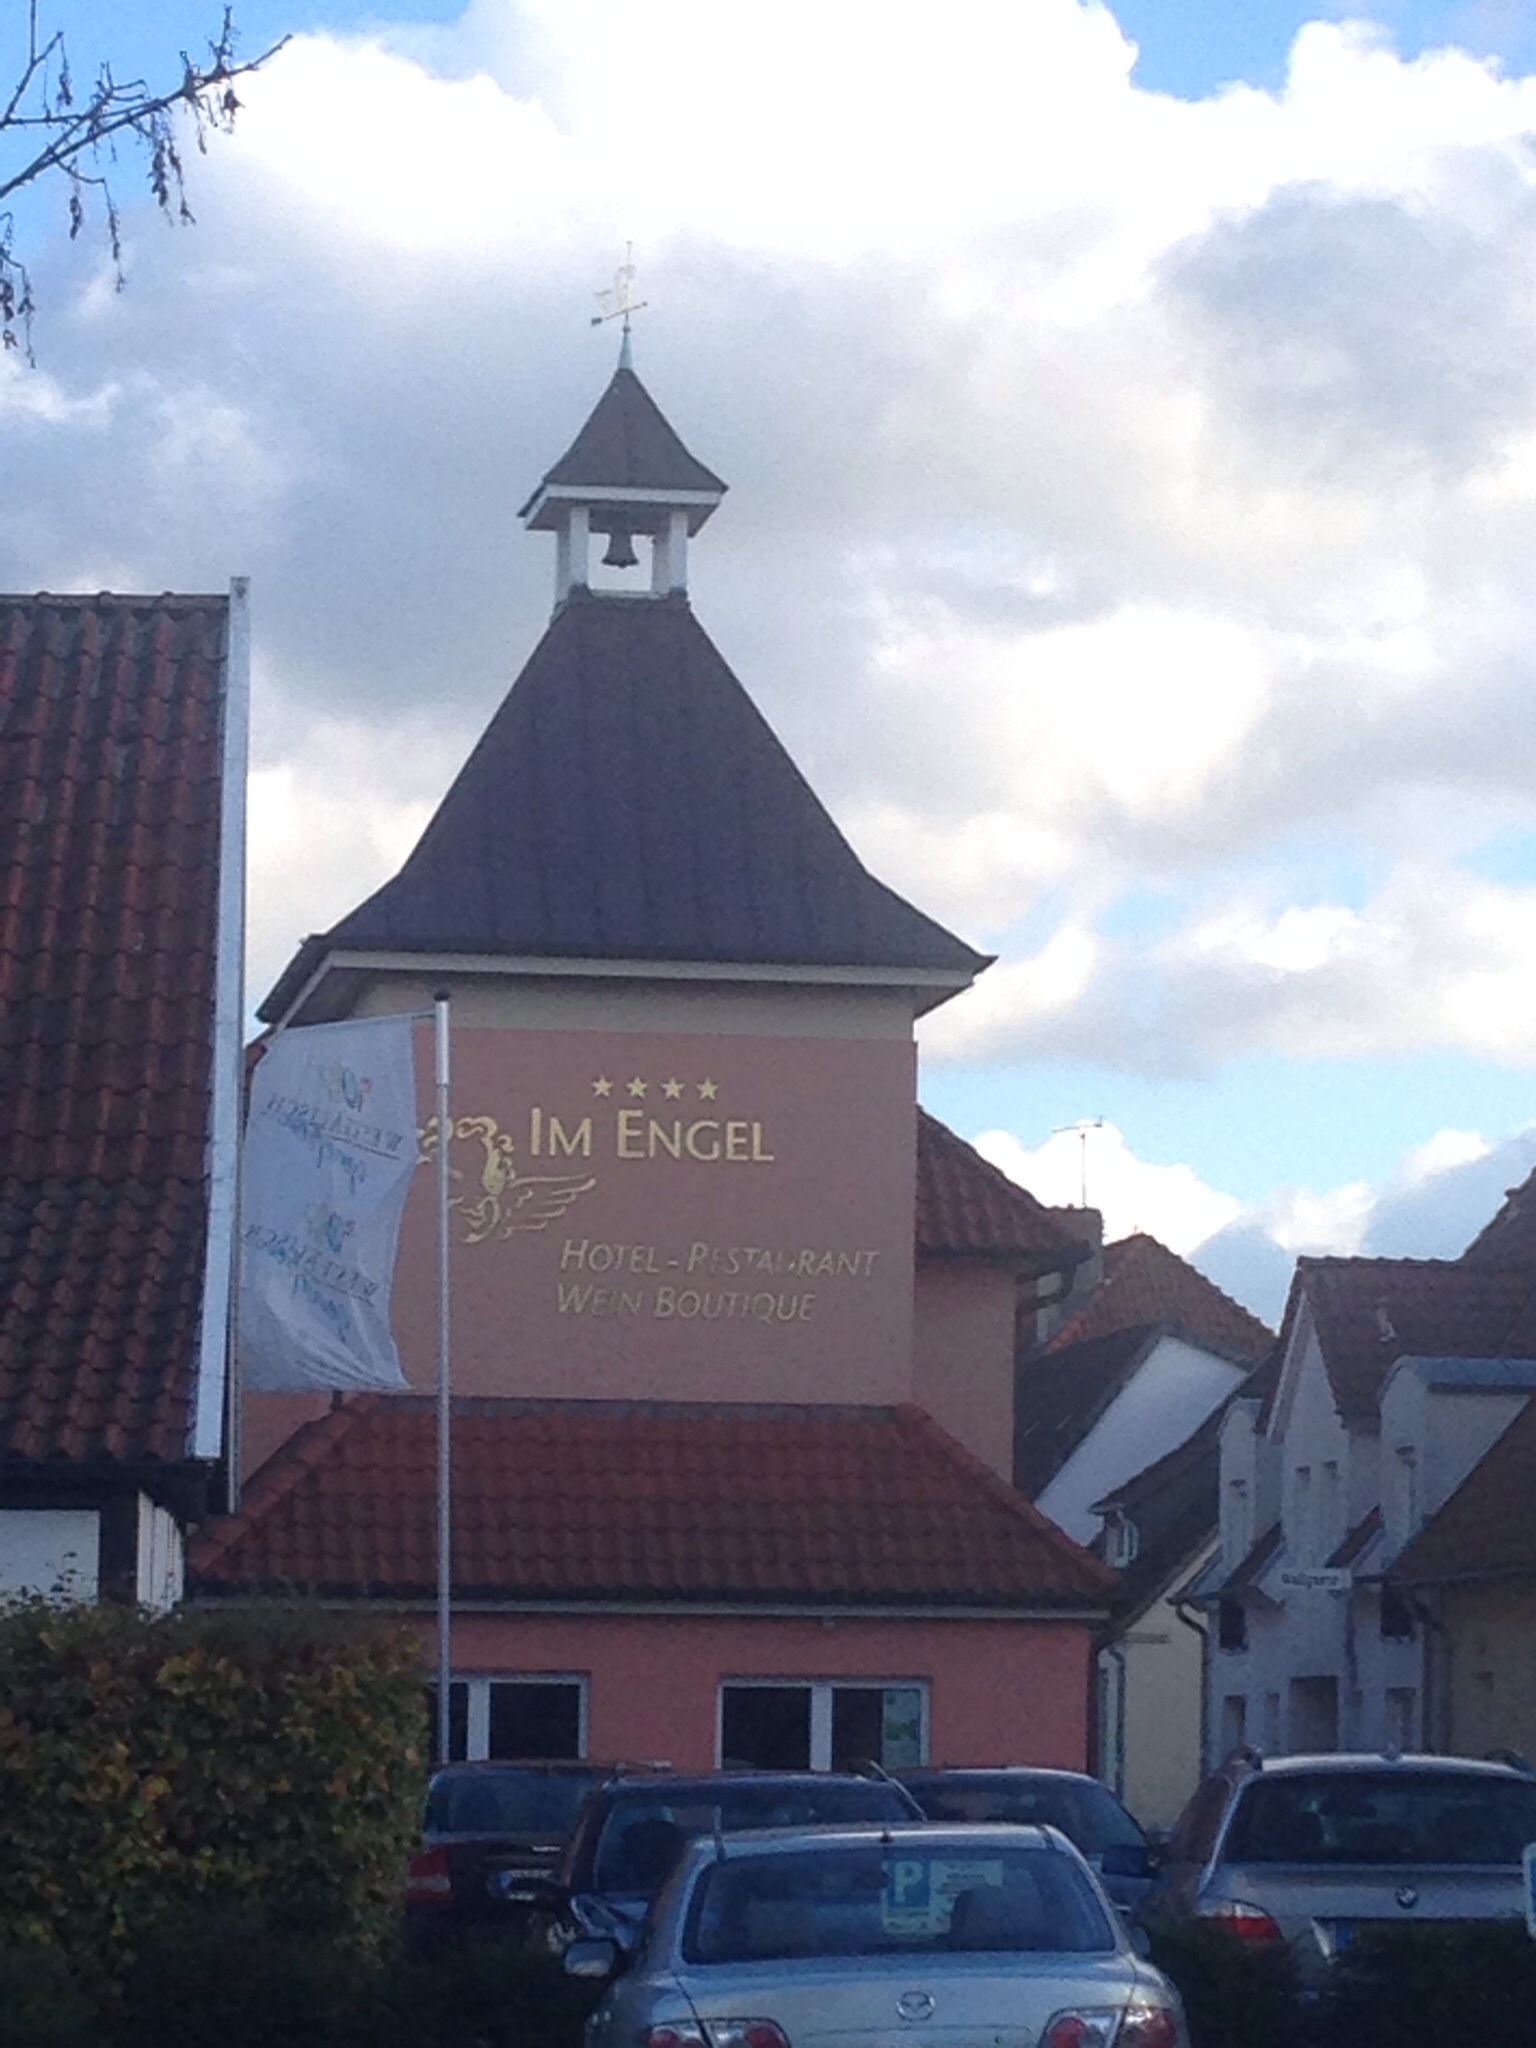 Bild 1 Hotel - Restaurant - Weinboutique "Im Engel" in Warendorf